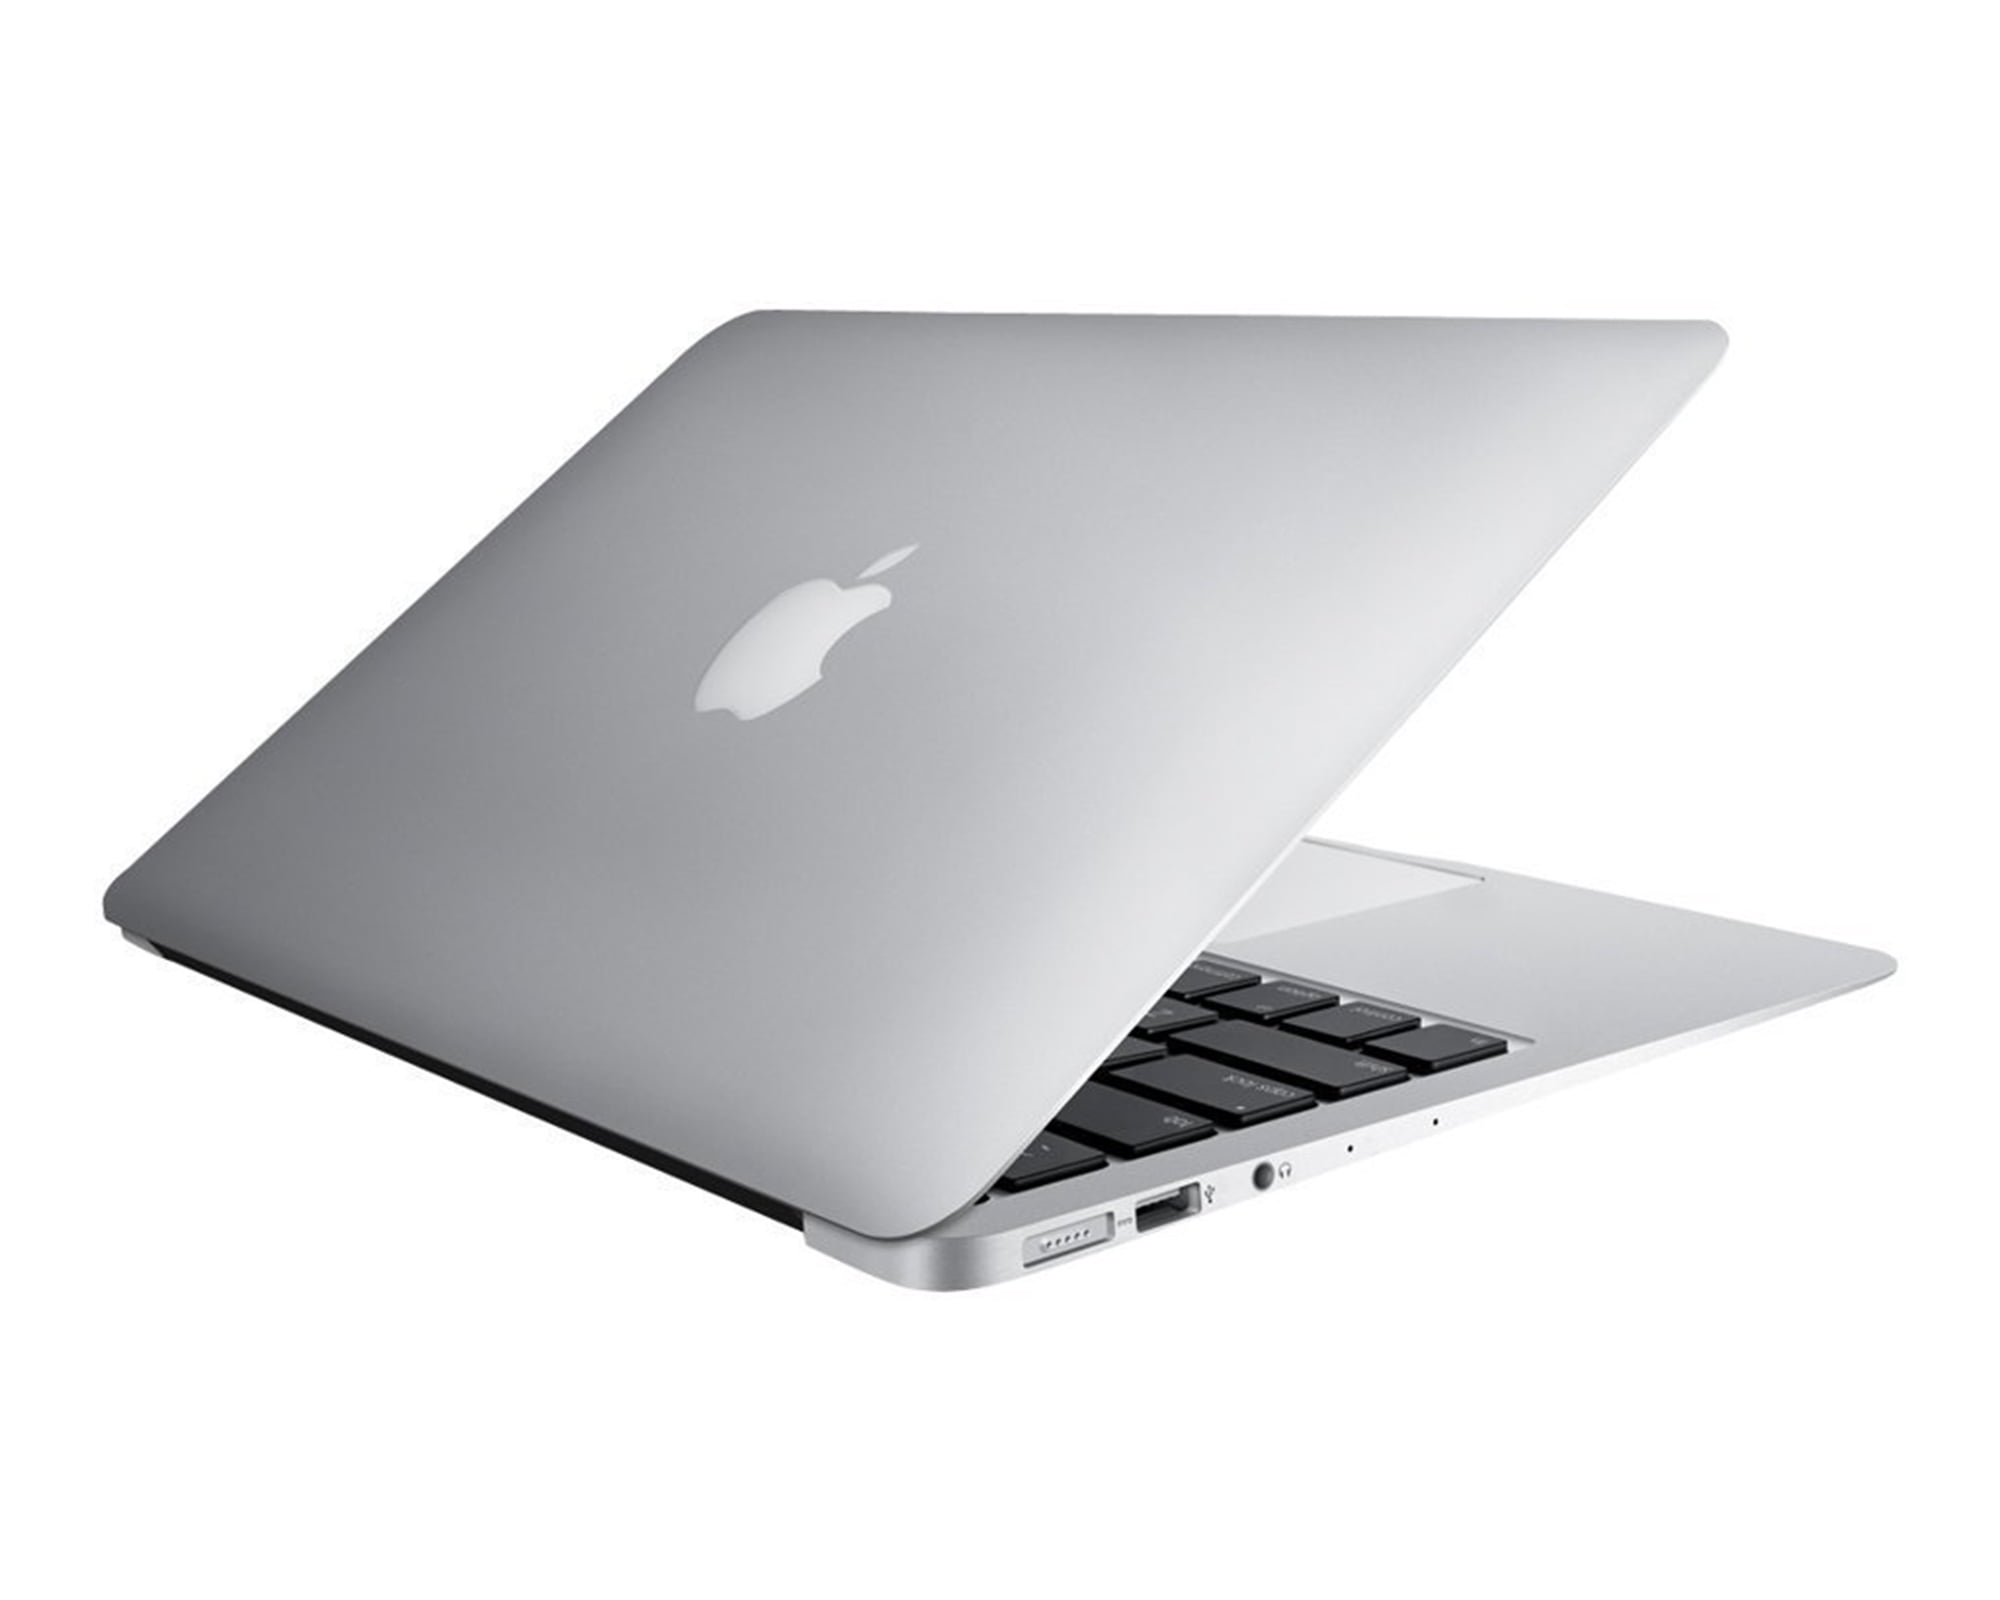 Restored Apple MacBook Air MJVE2LL/A Intel Core i5-5250U X2 1.6GHz 4GB 128GB SSD Silver (Refurbished) - image 5 of 7